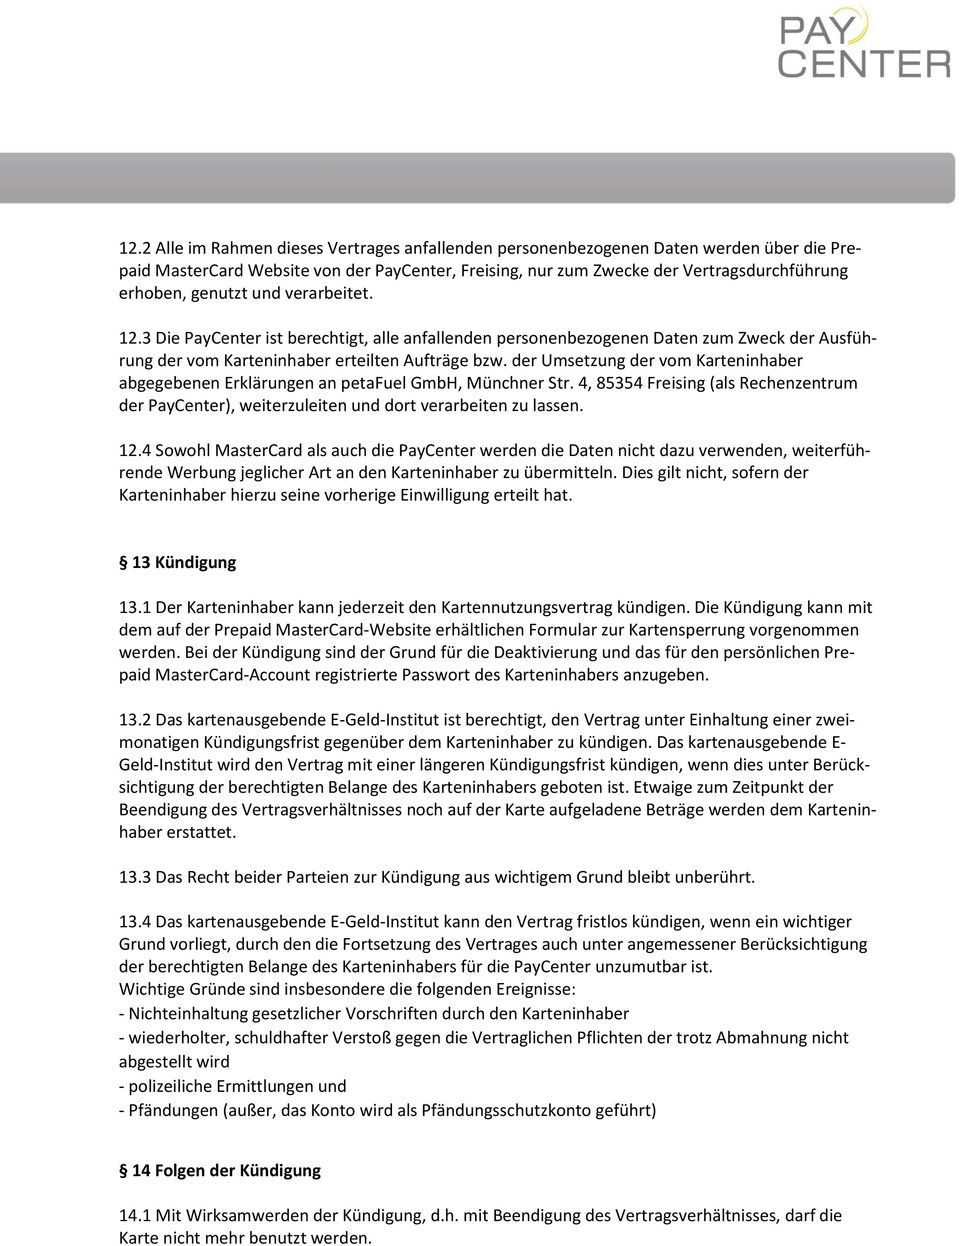 der Umsetzung der vom Karteninhaber abgegebenen Erklärungen an petafuel GmbH, Münchner Str. 4, 85354 Freising (als Rechenzentrum der PayCenter), weiterzuleiten und dort verarbeiten zu lassen. 12.